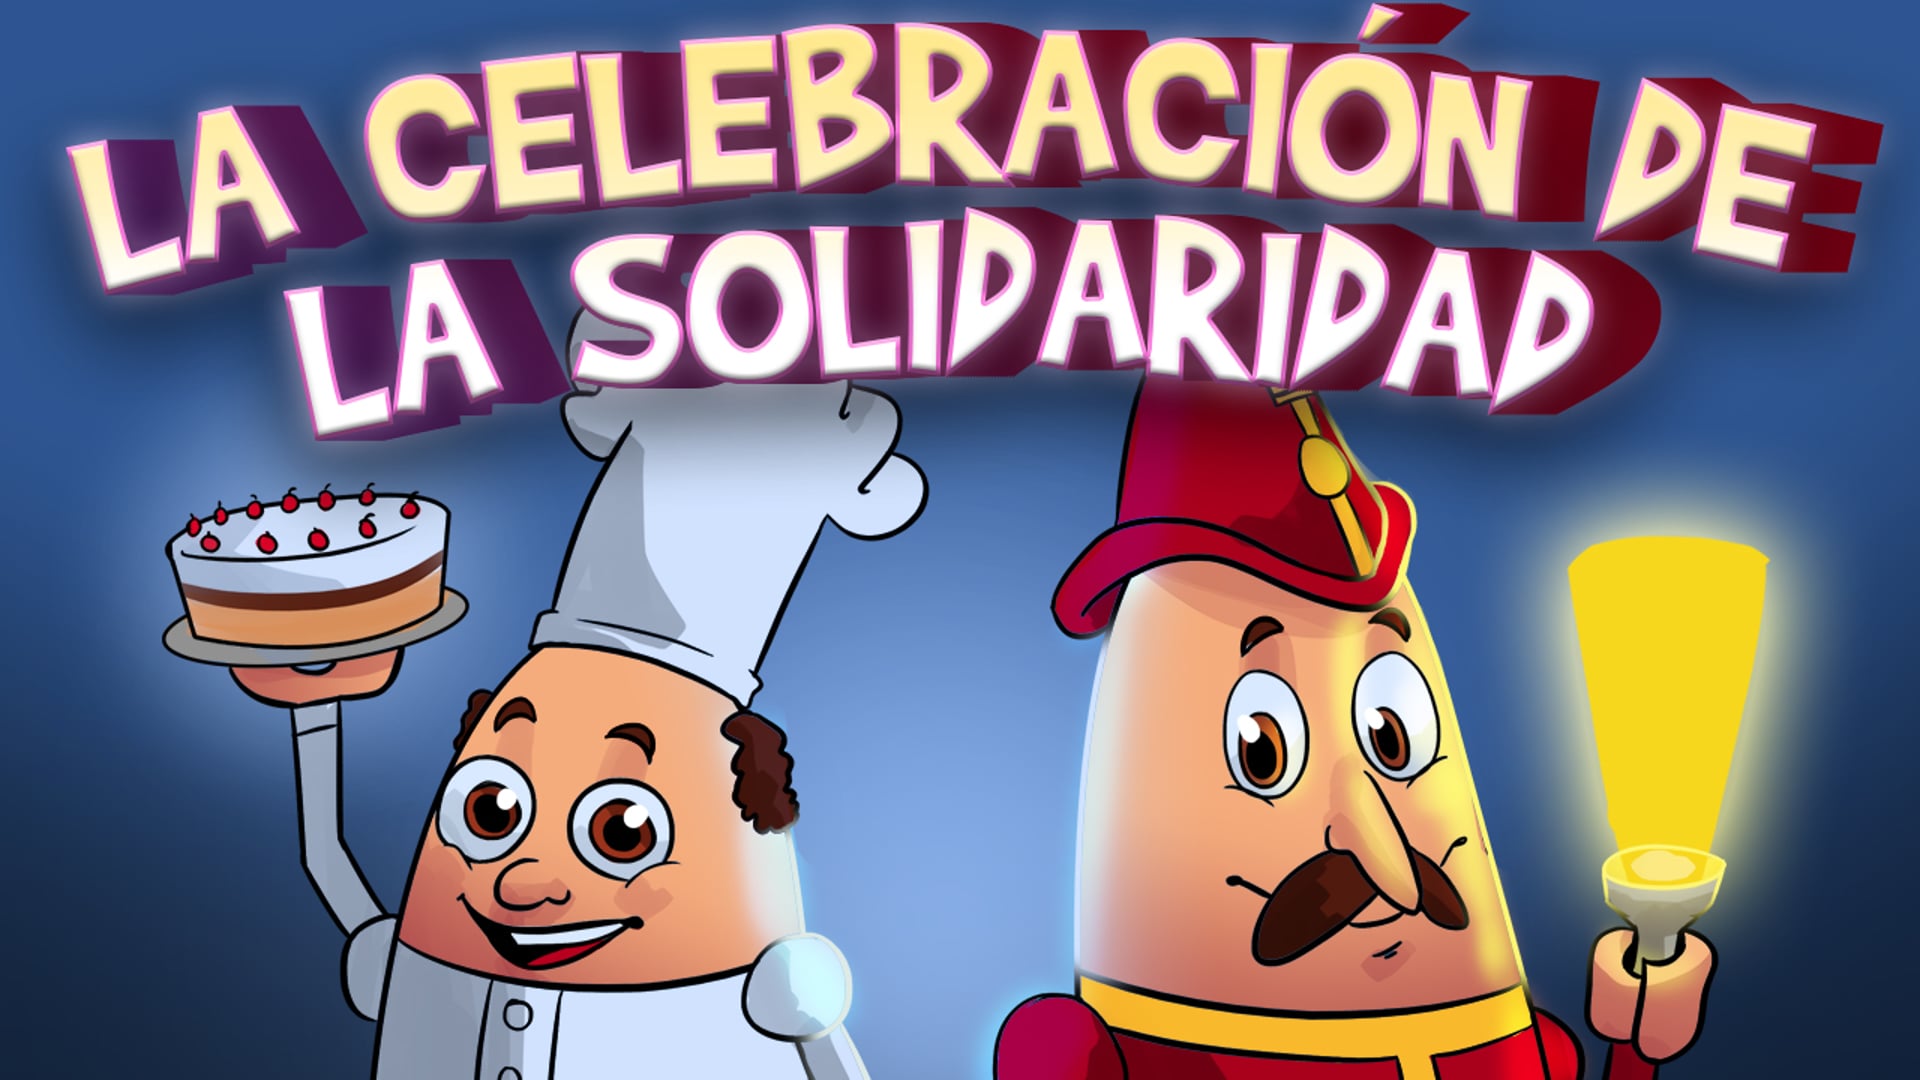 La celebración de la solidaridad